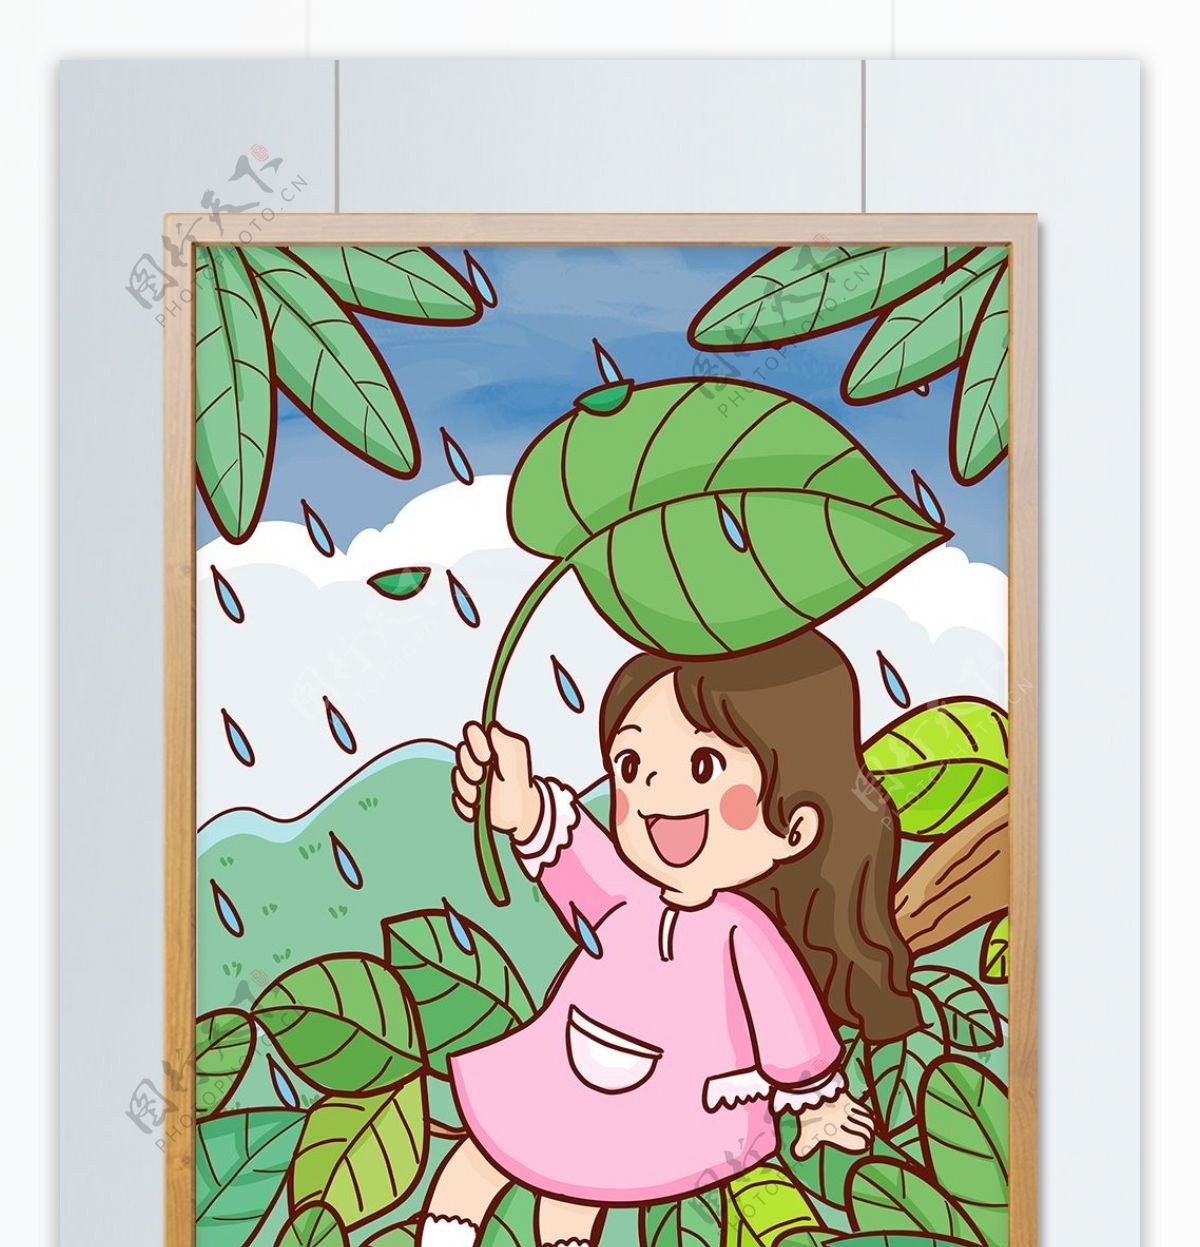 二十四节气谷雨季节女孩撑叶子挡雨手绘插画